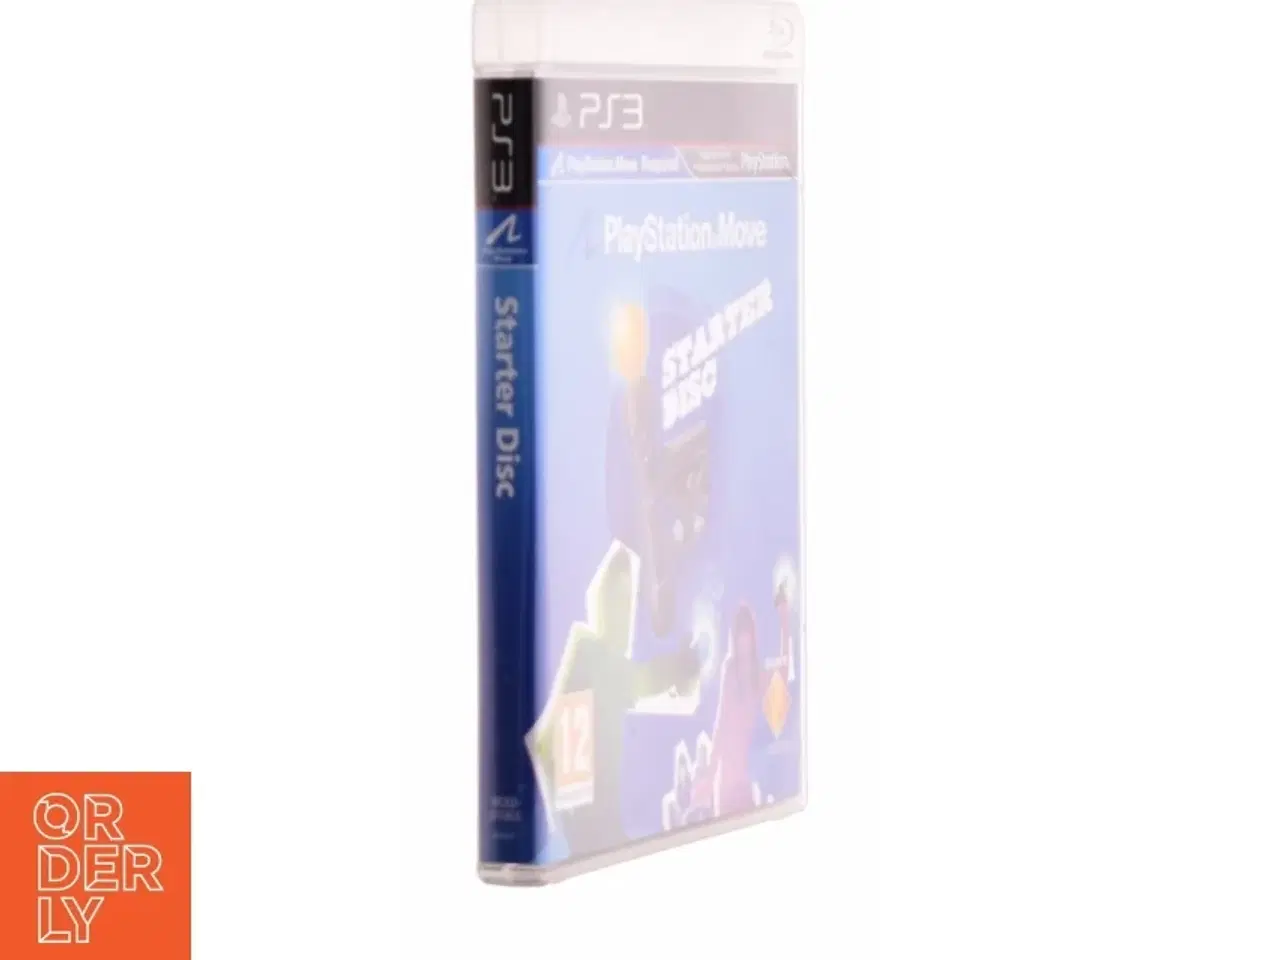 Billede 1 - PlayStation move Starter Disc fra PS3